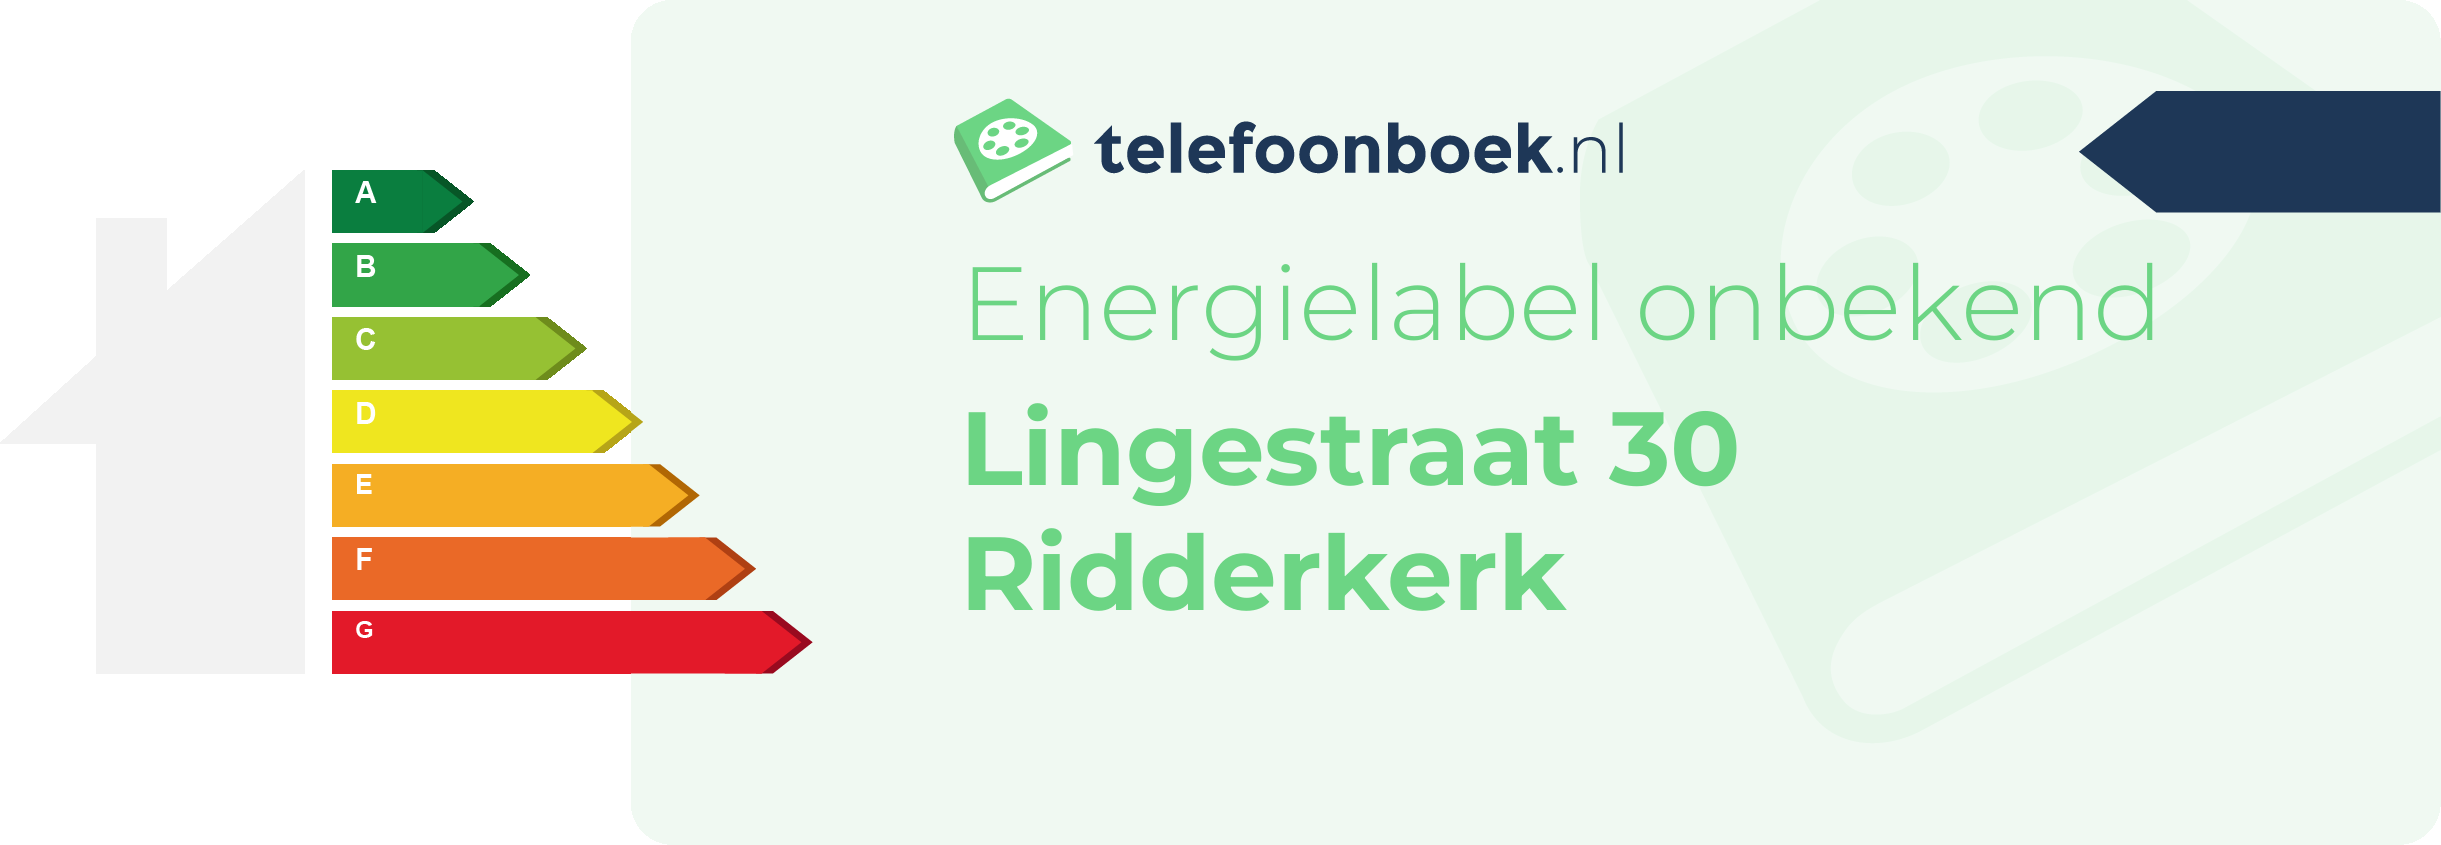 Energielabel Lingestraat 30 Ridderkerk